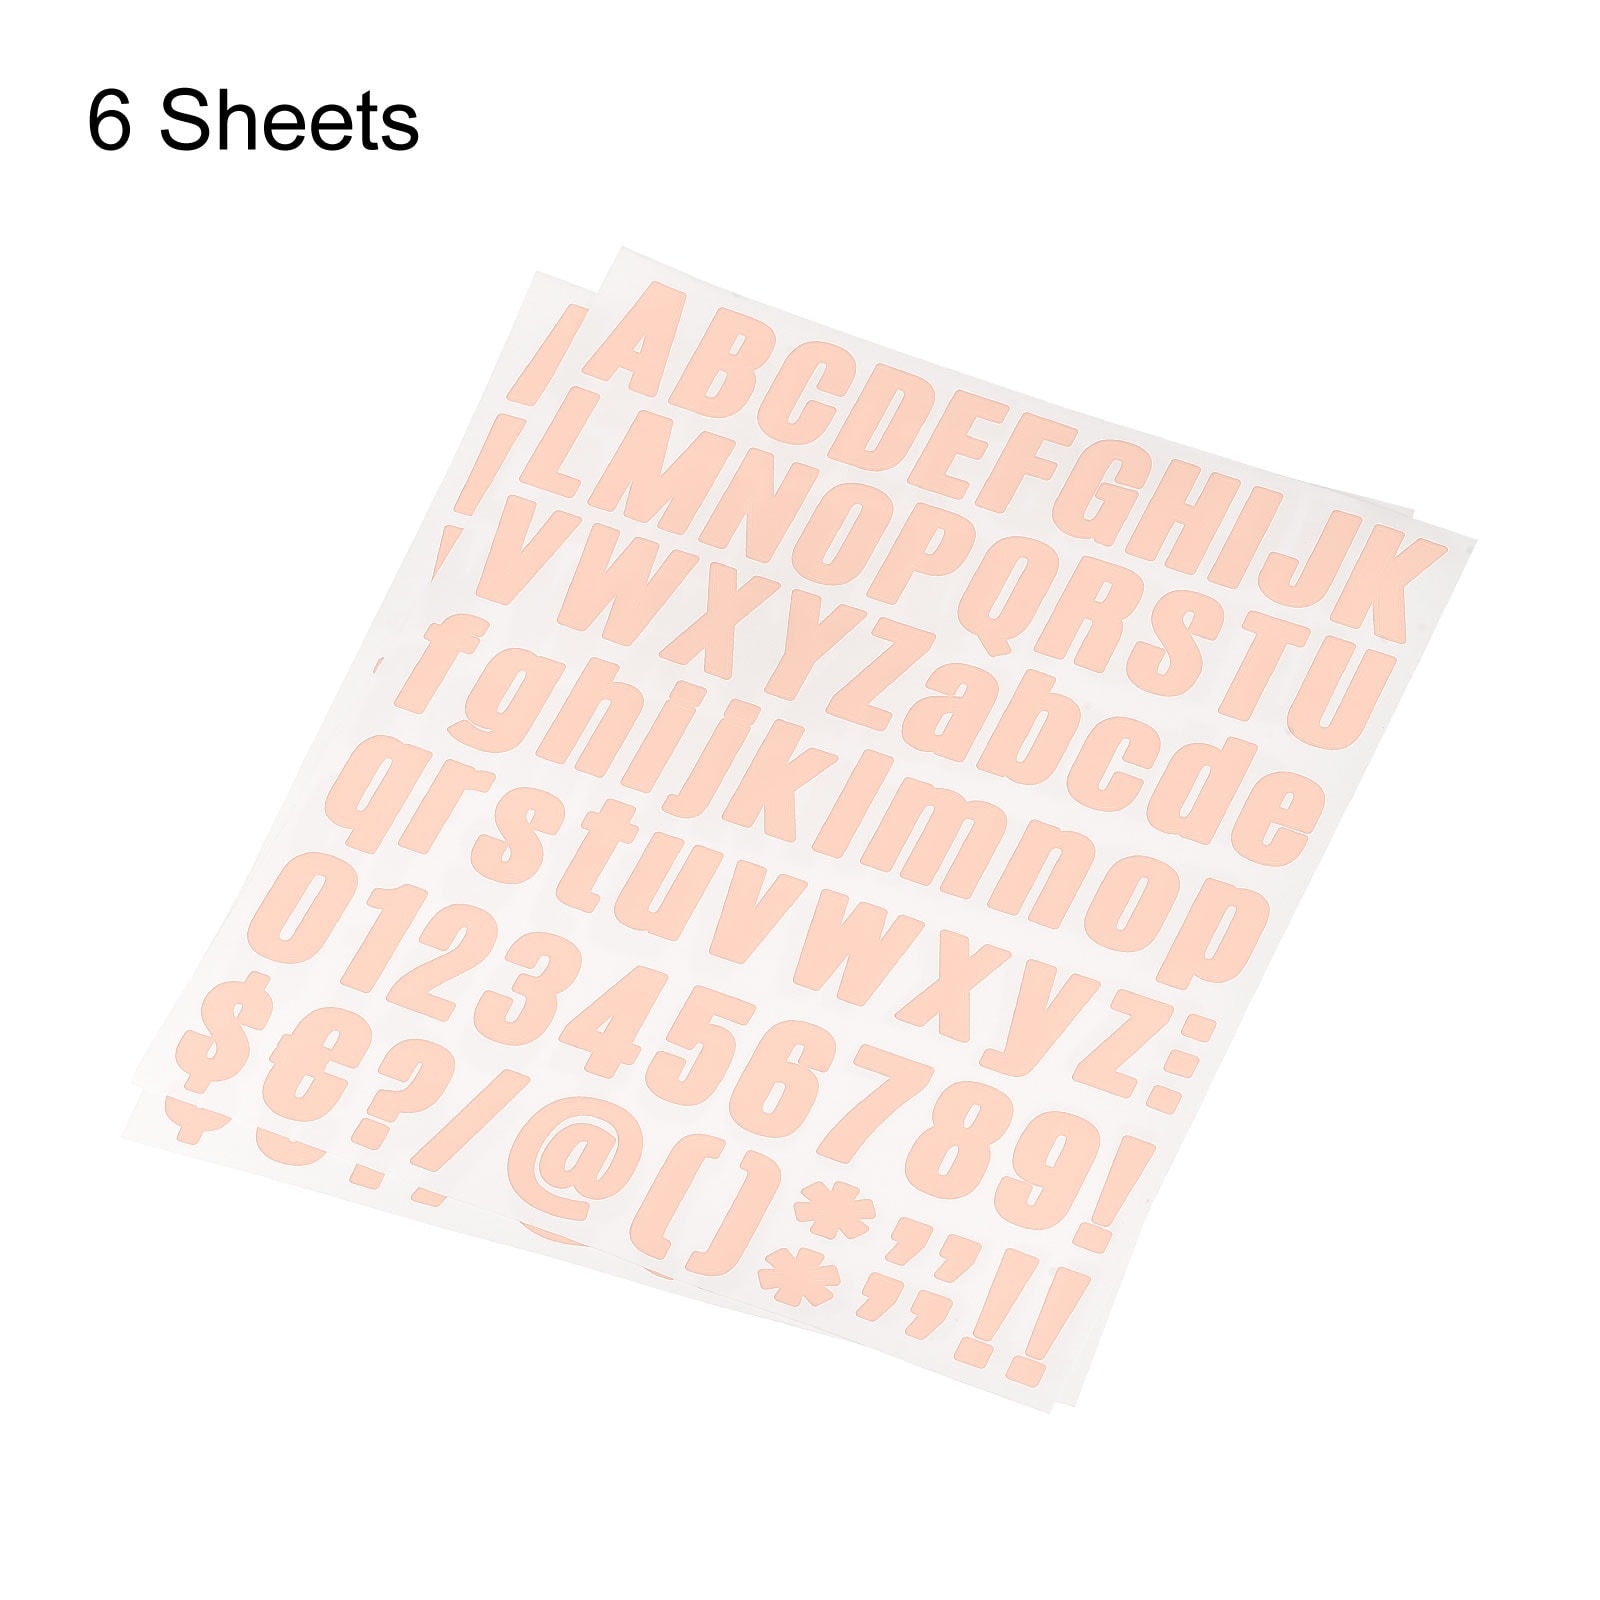 1 Inch Self Adhesive Waterproof Vinyl Letter Number Stickers 6 Sheet Orange